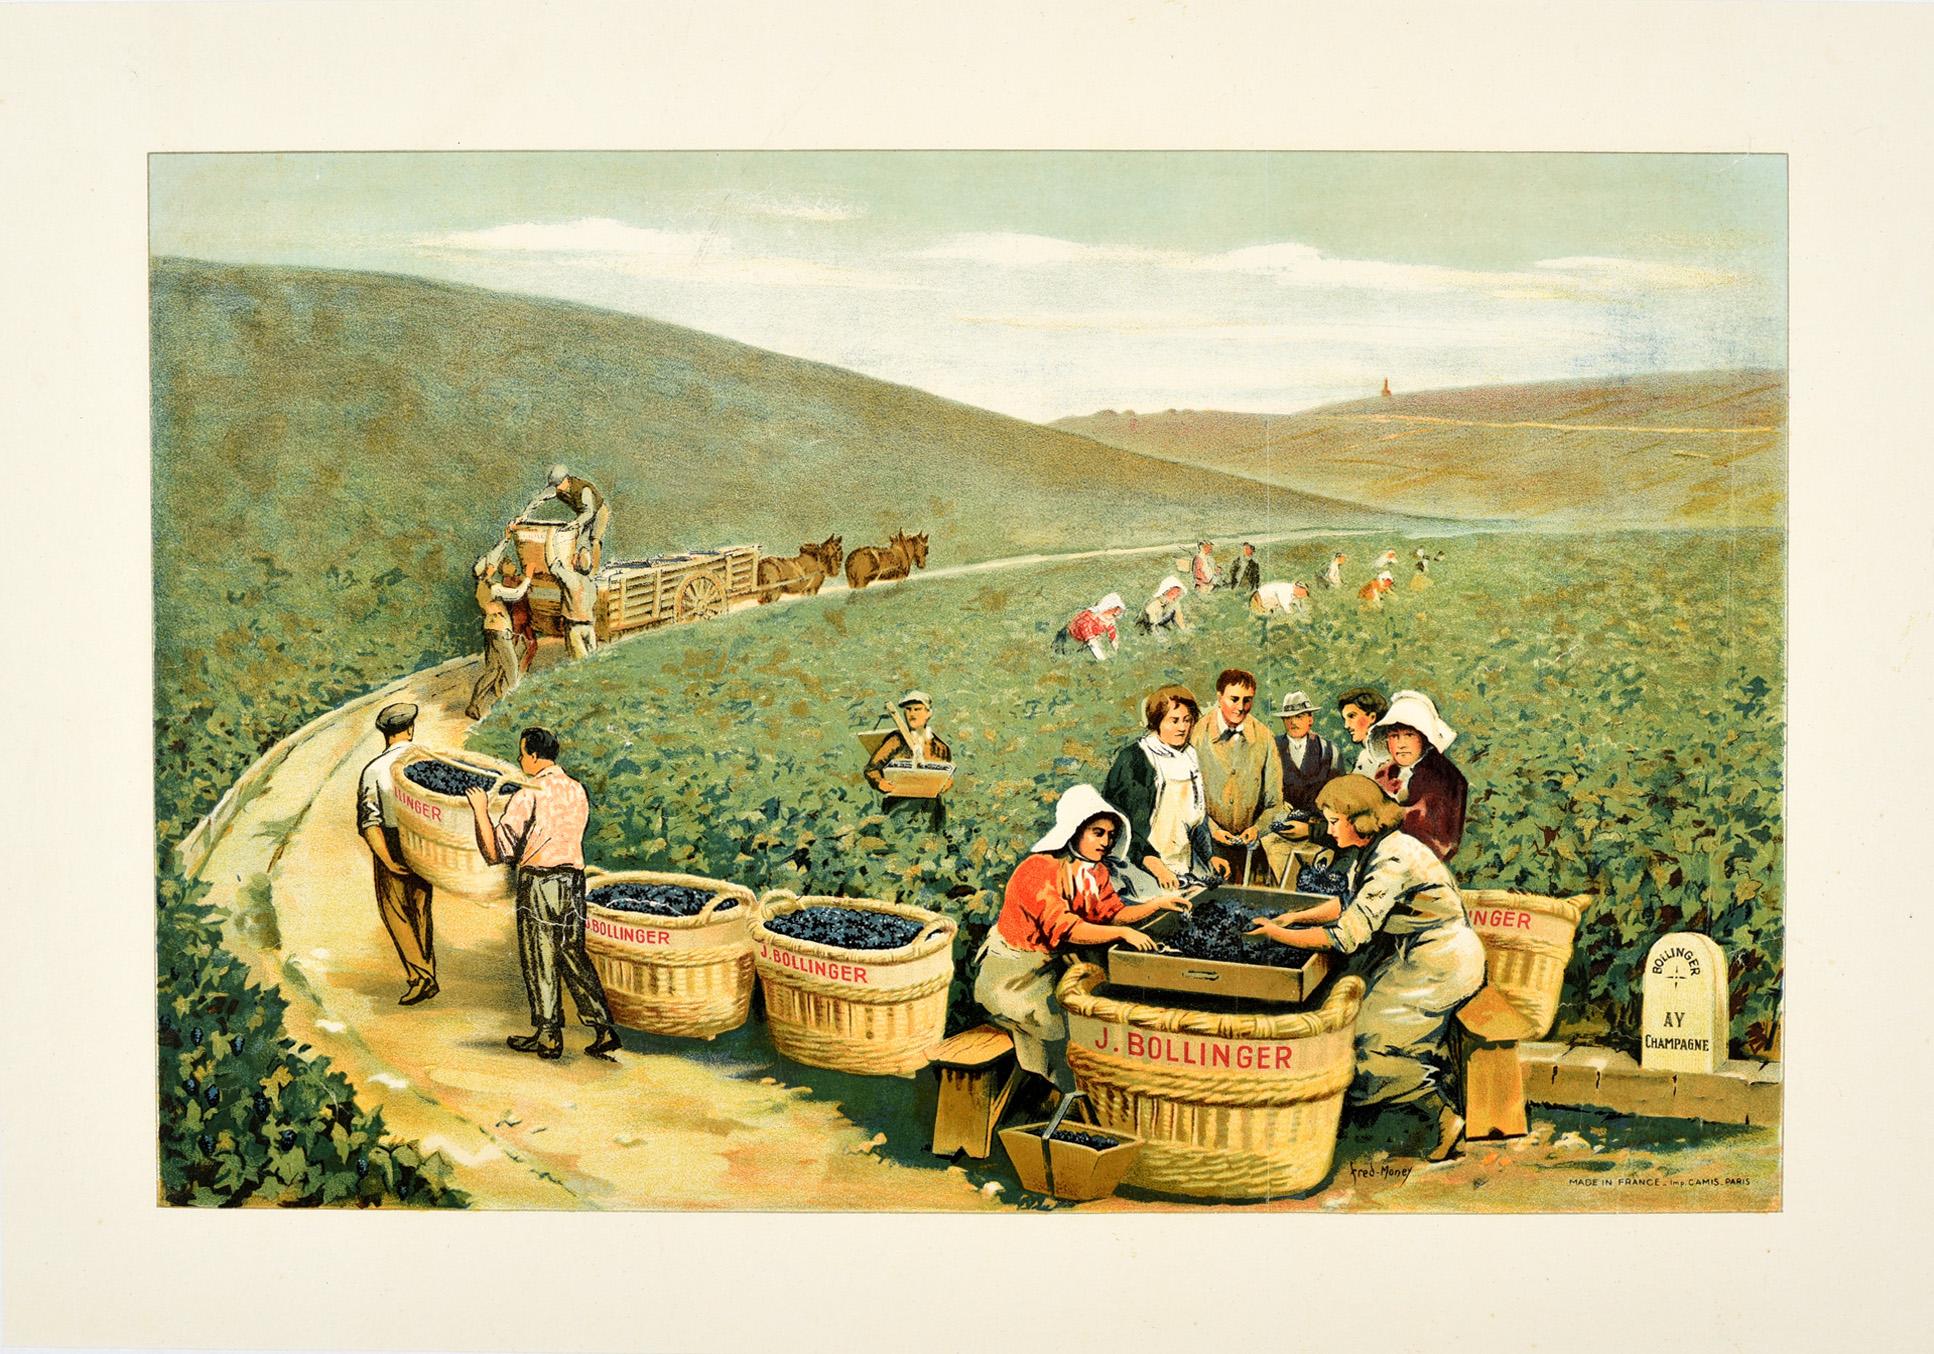 Fred Money Print - Original Antique J. Bollinger Champagne Poster Sparkling Wine Vineyard Ay France